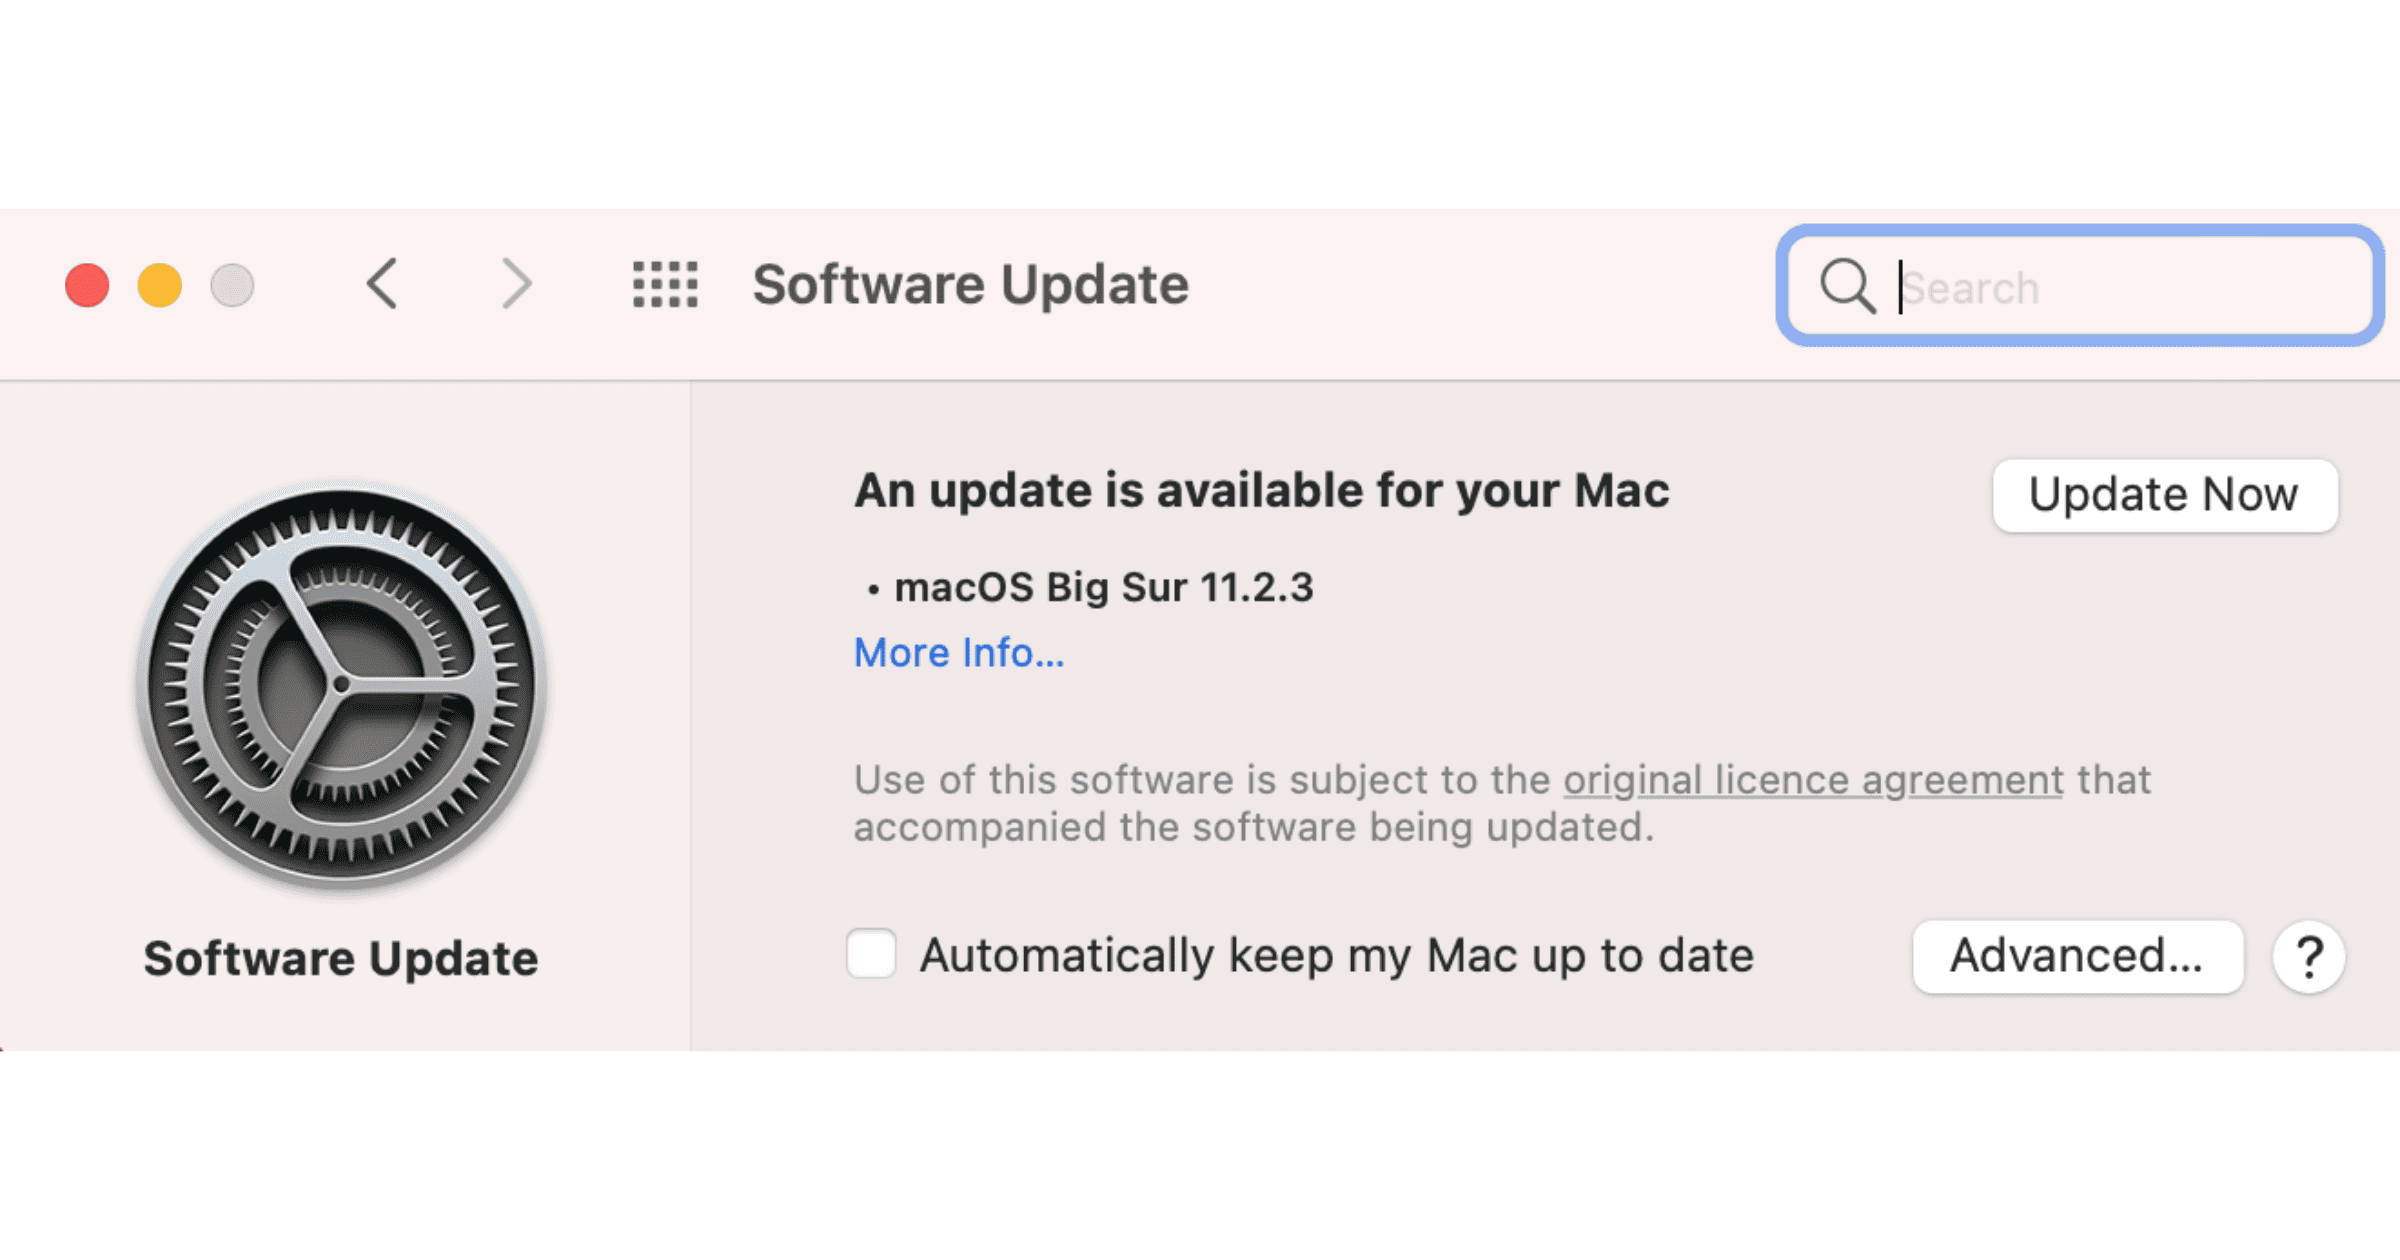 macOS Big Sur 11.2.3